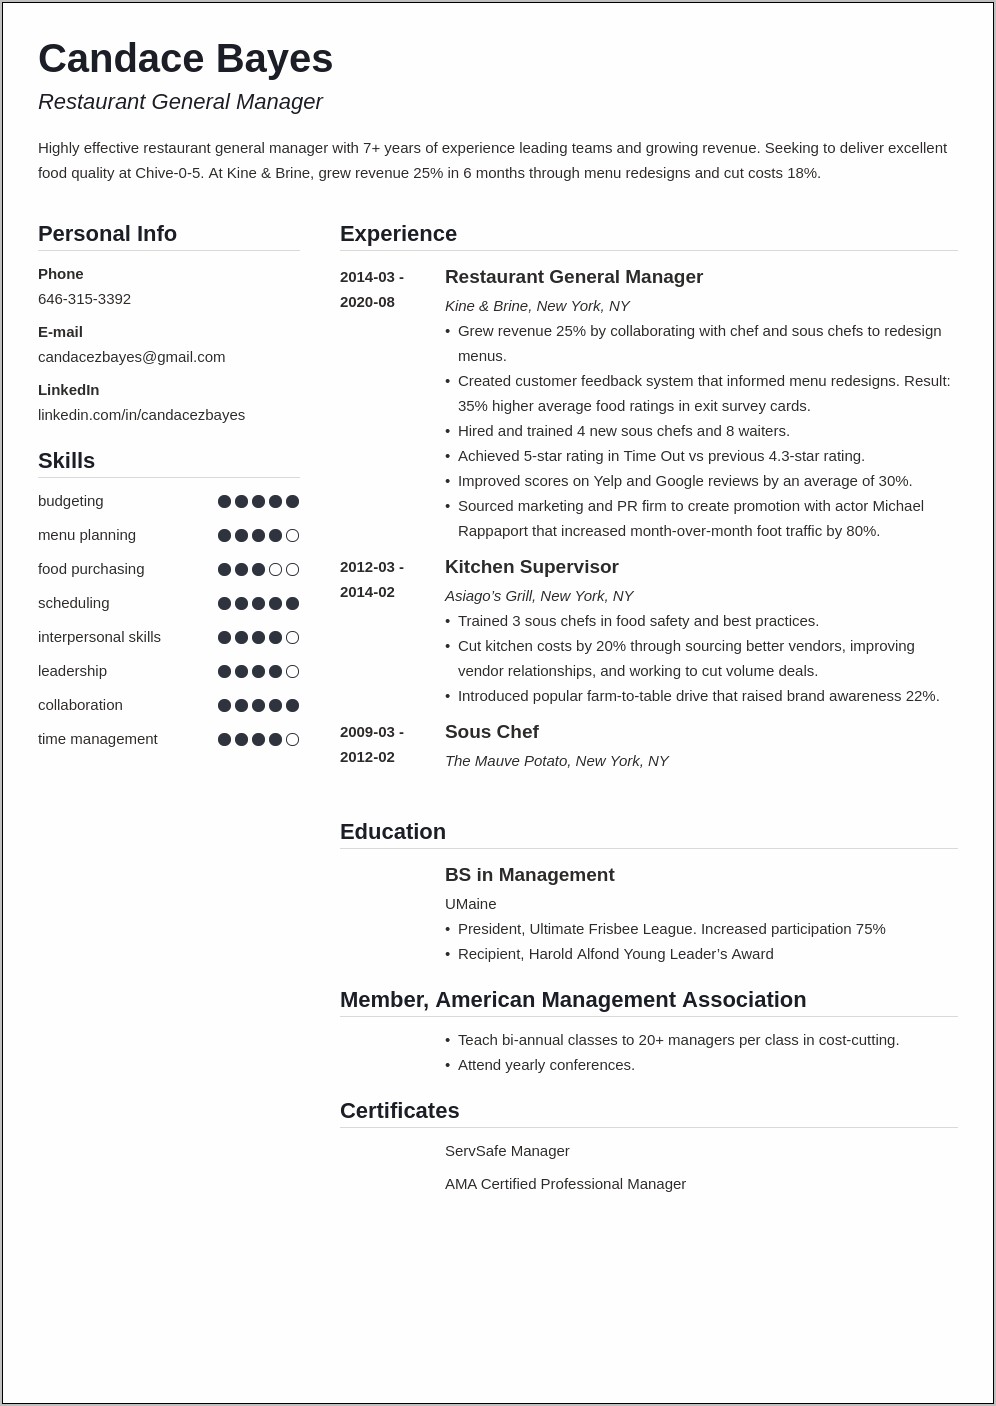 Resume Sample General Manager Restaurant